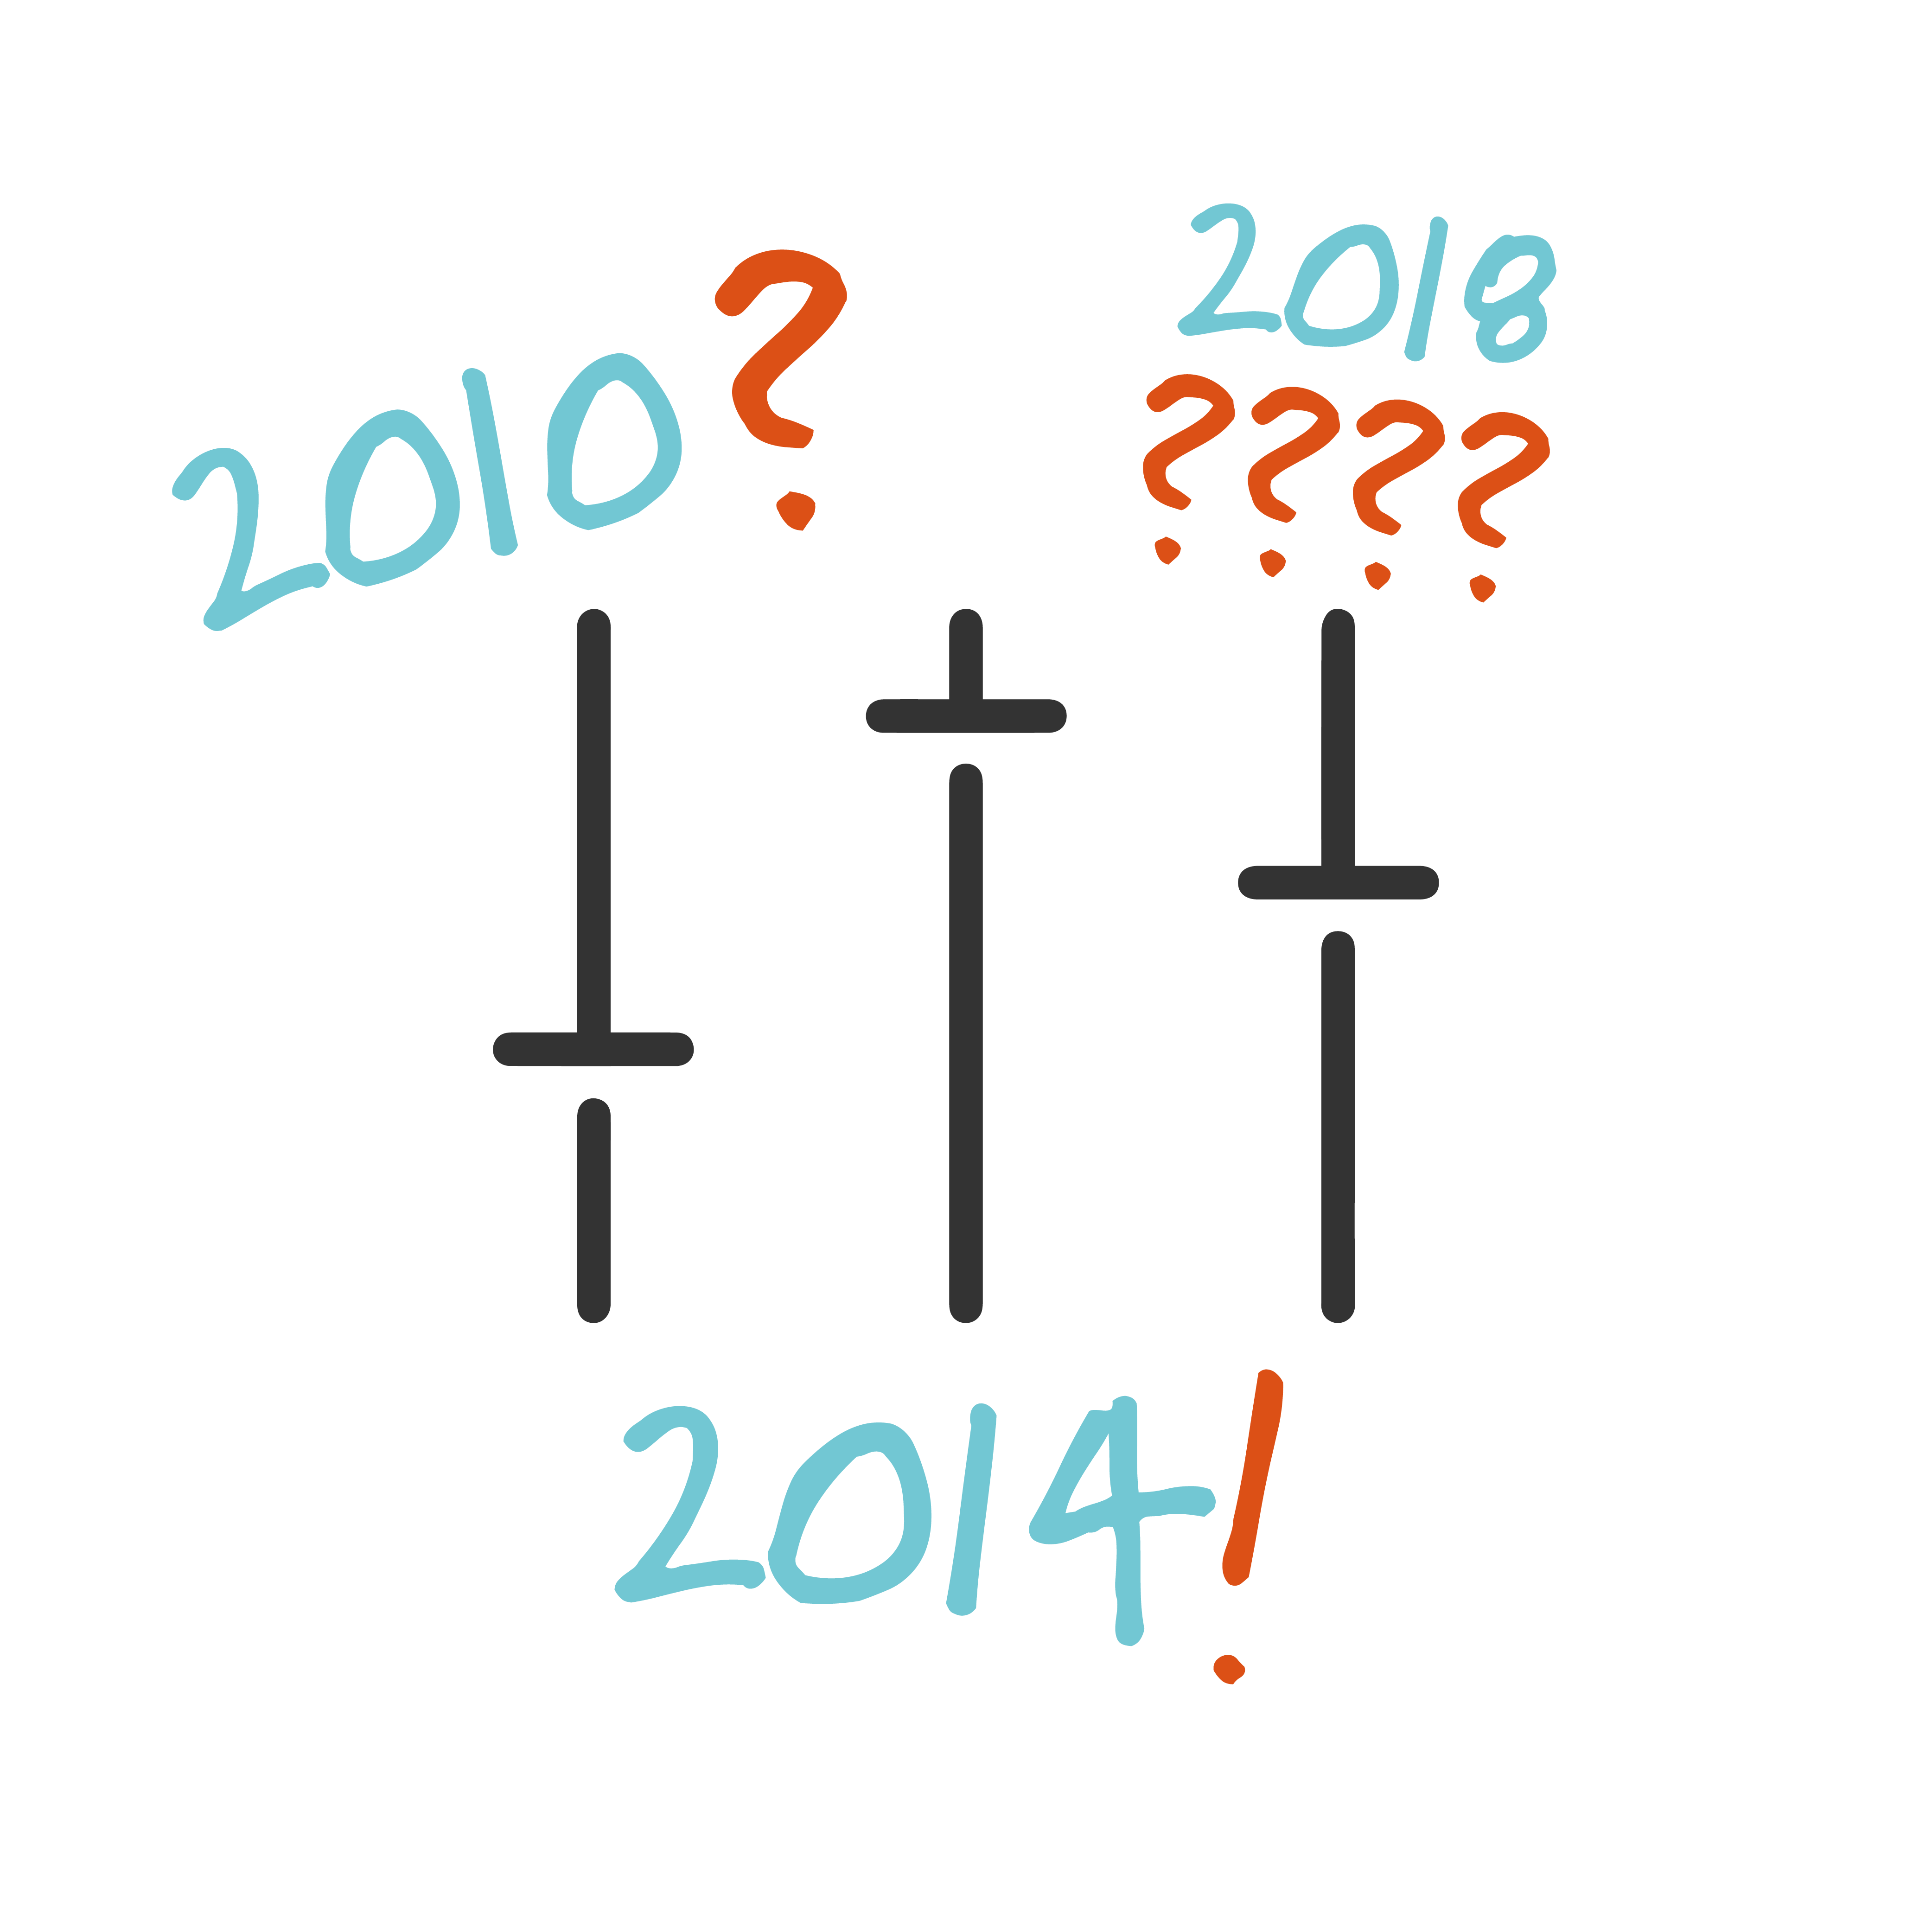 Document Décret tertiaire : déterminer l’année de référence, un choix stratégique à ne pas négliger en 2021 !